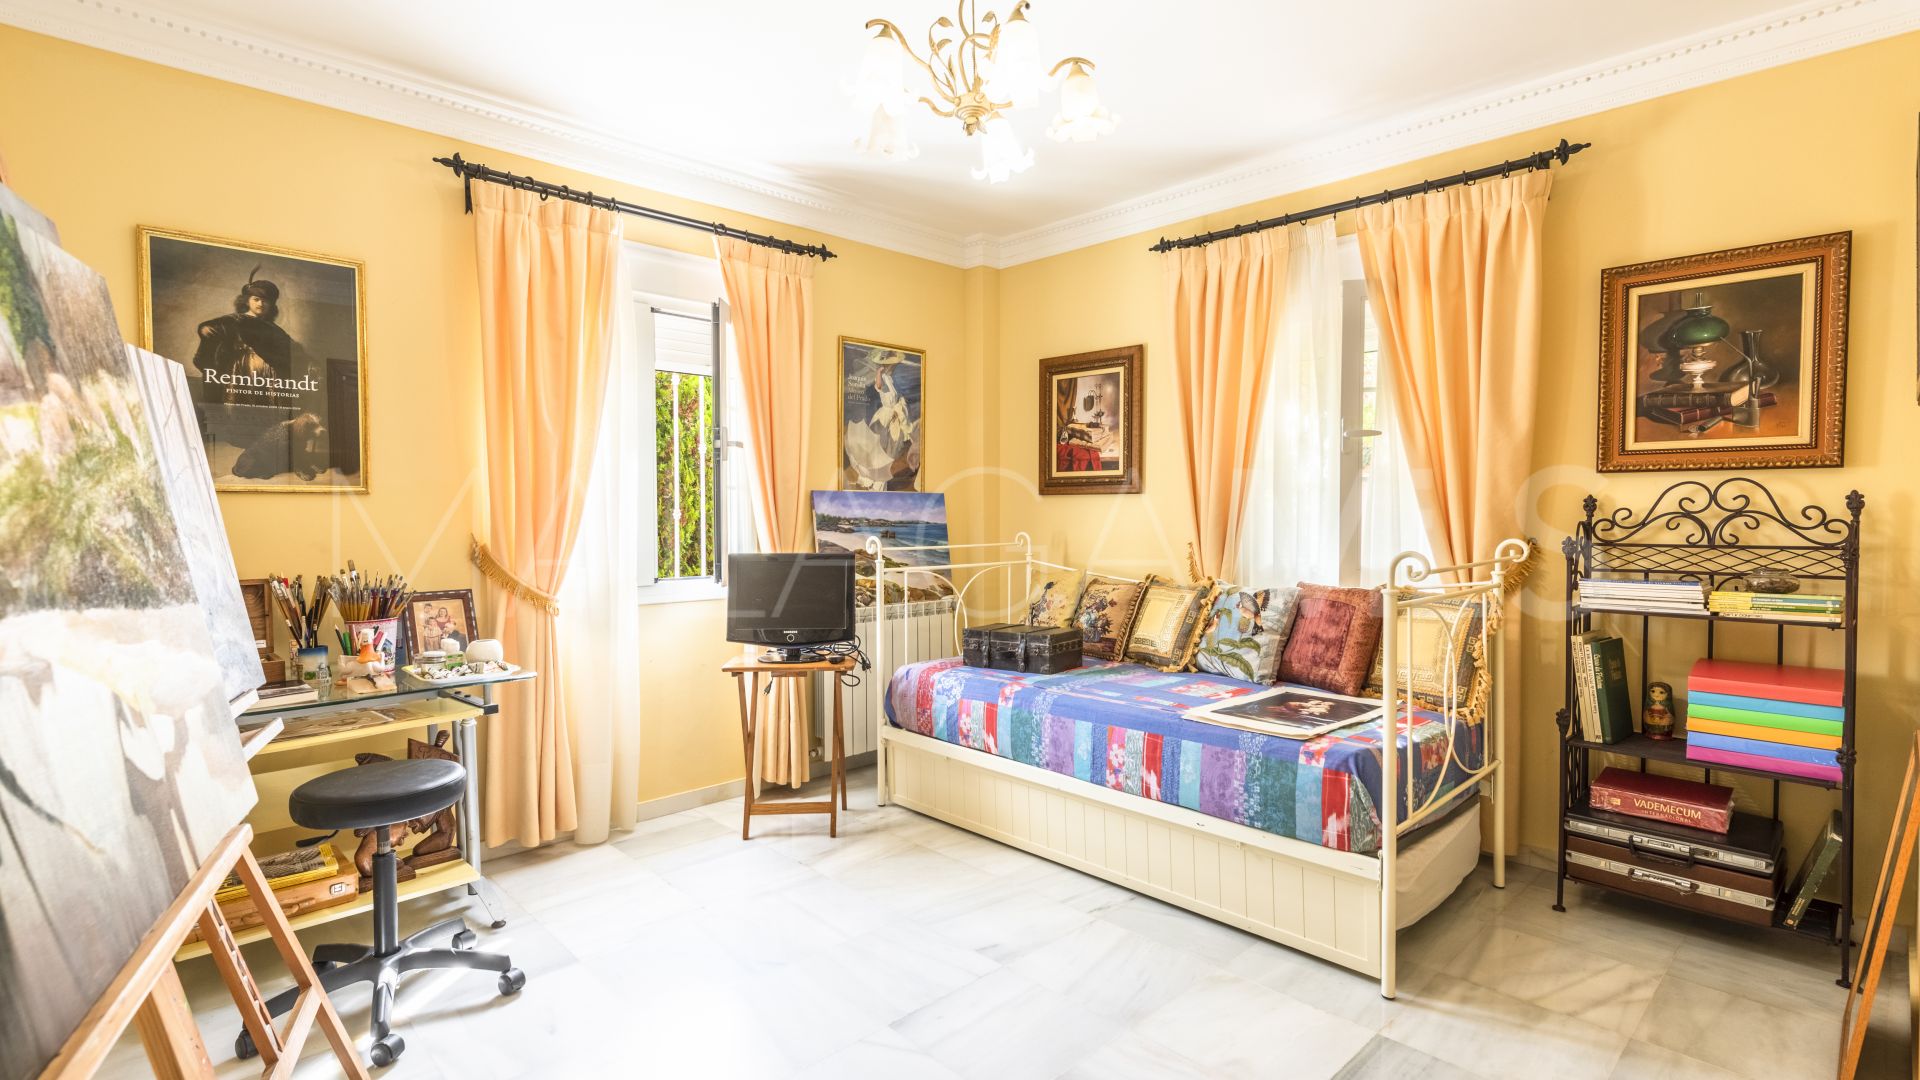 Villa with 4 bedrooms for sale in La Gaspara